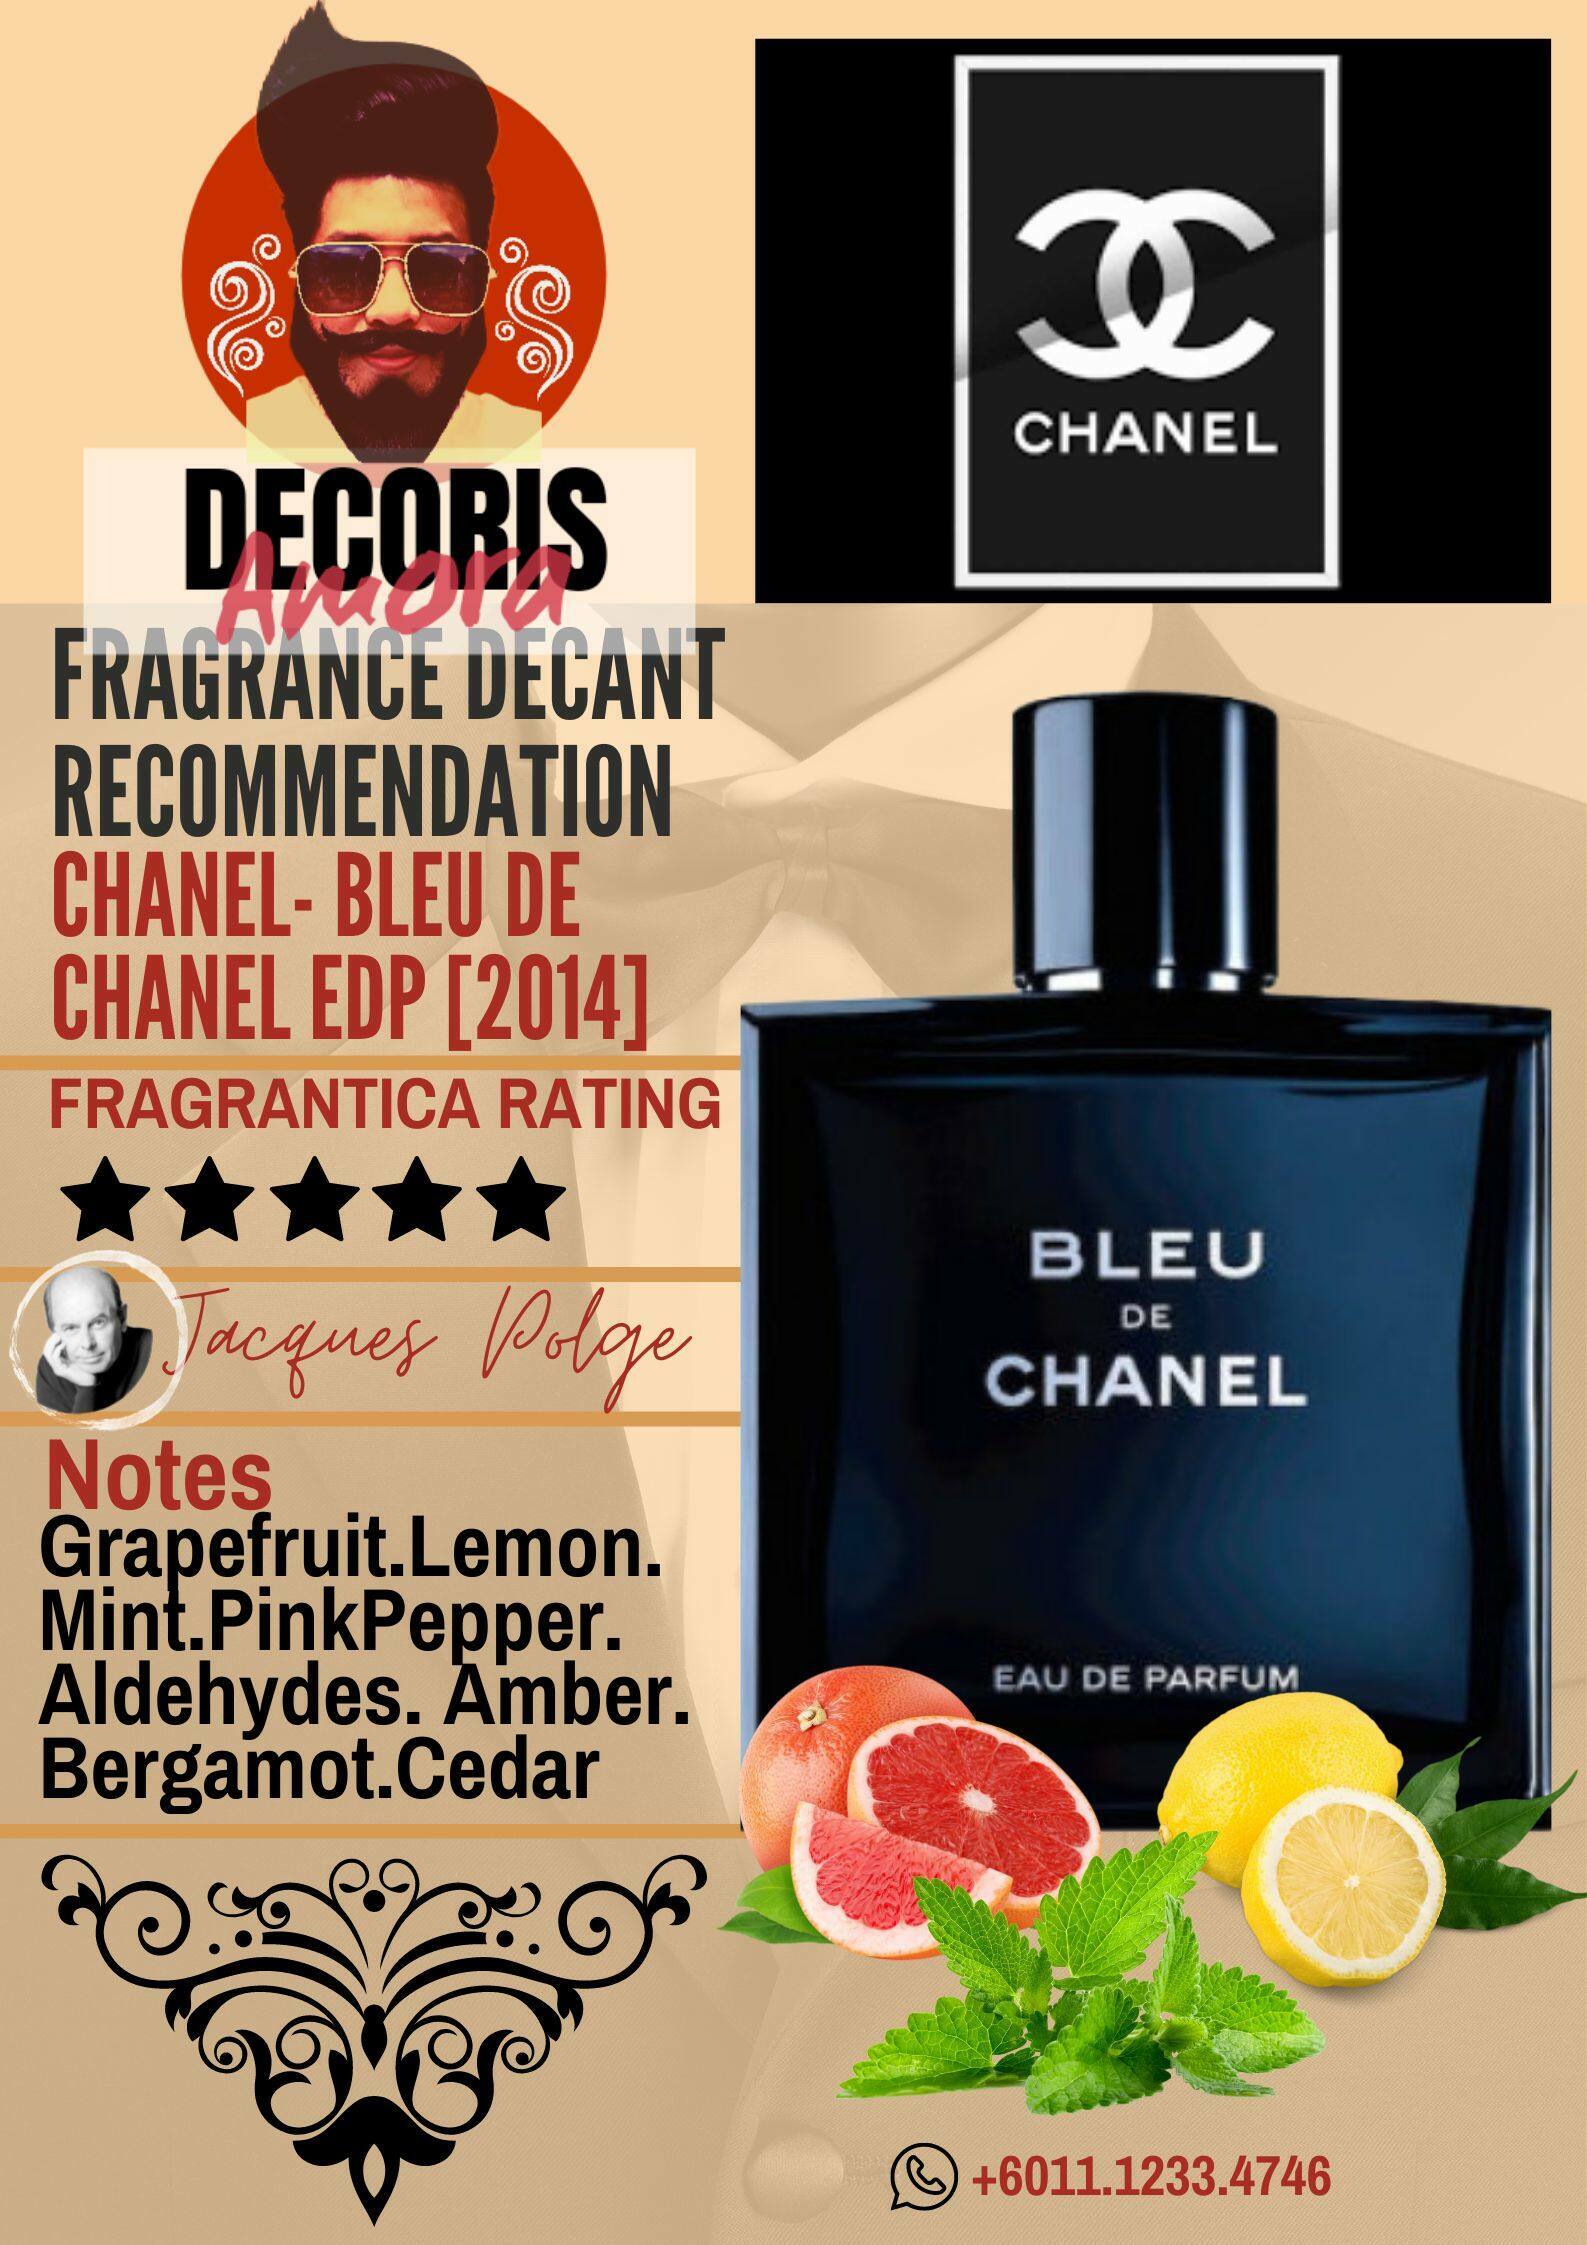 Chanel Bleu de Chanel Eau de Parfum - Perfume Decant – Decoris Amora  Perfume Decant